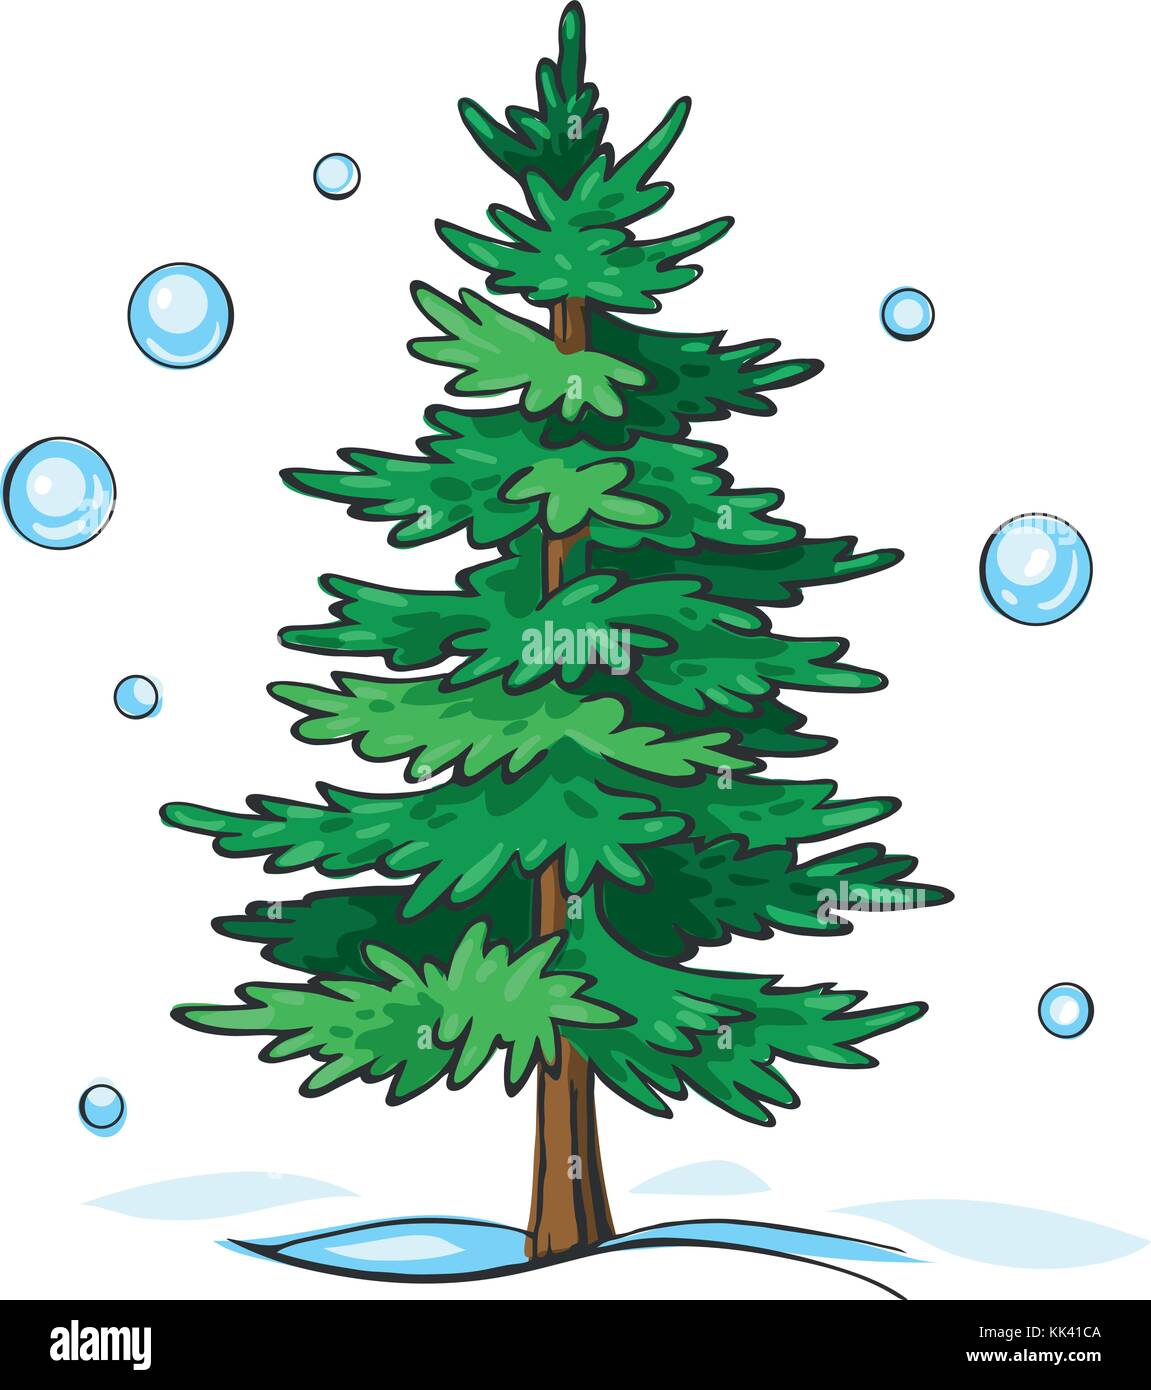 Weihnachtsbaum ist grün Stock-Vektorgrafik - Alamy